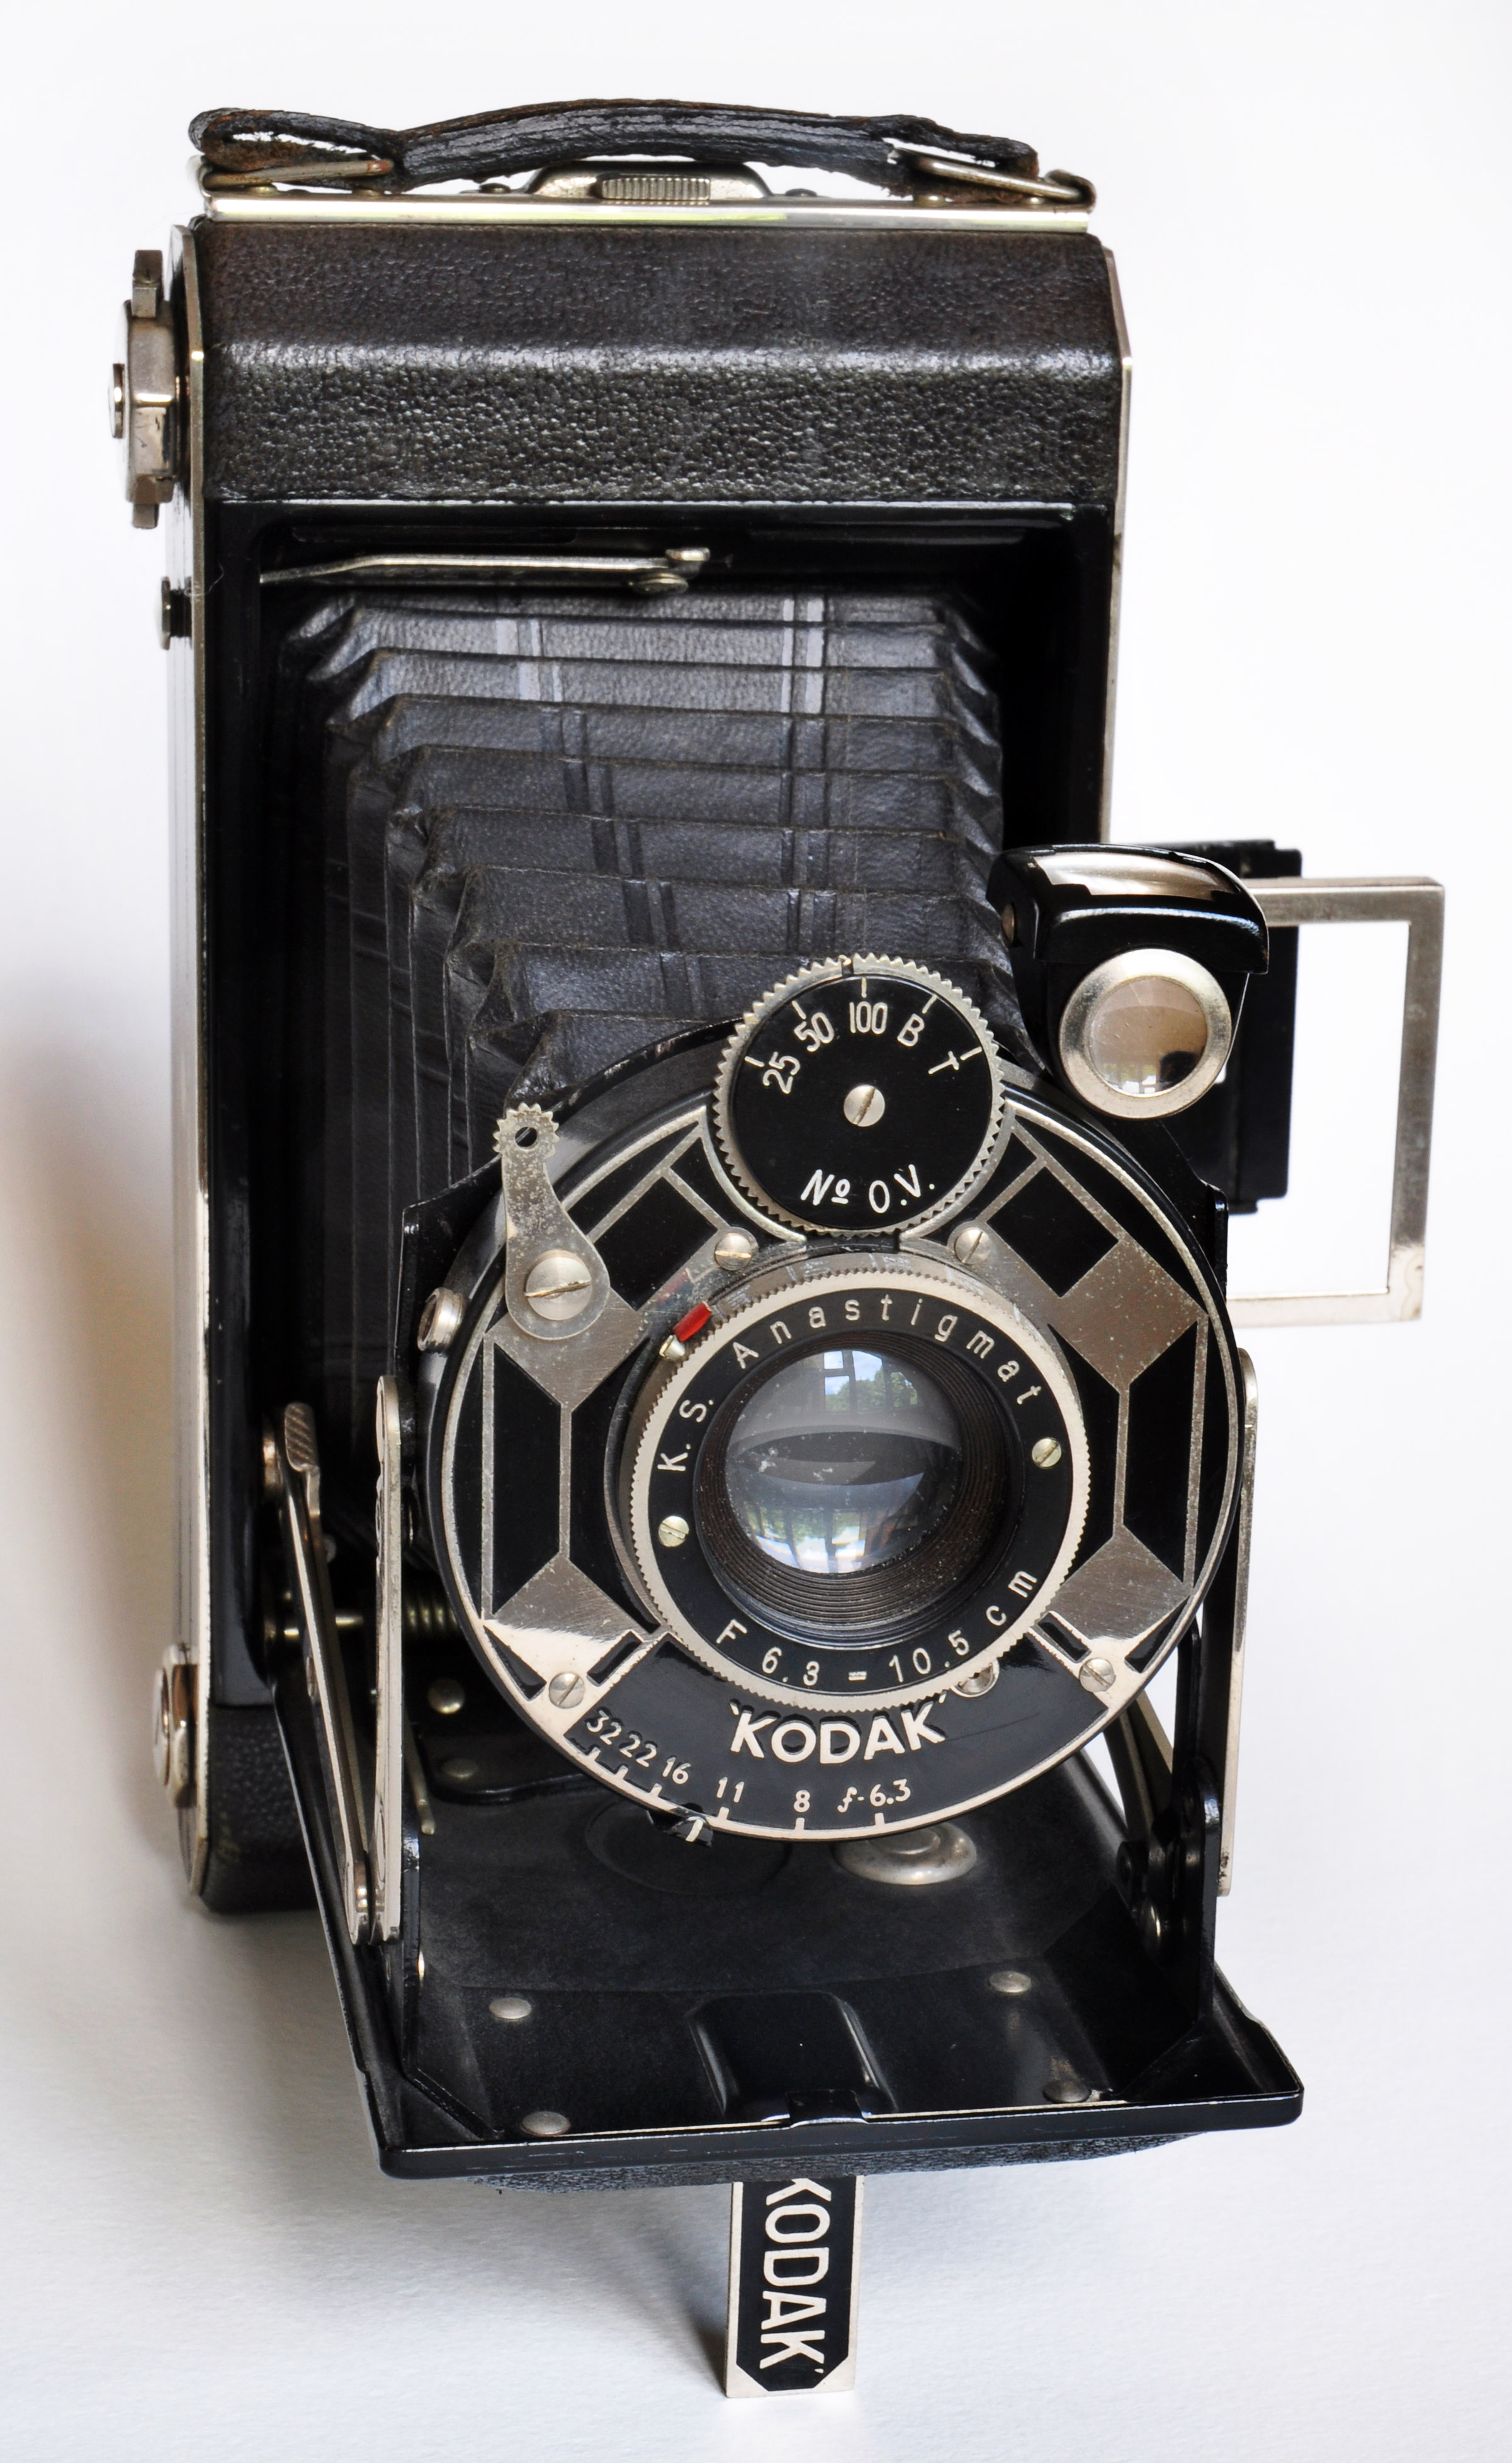 My Kodak Six-20 Model C folding camera (4774090873)